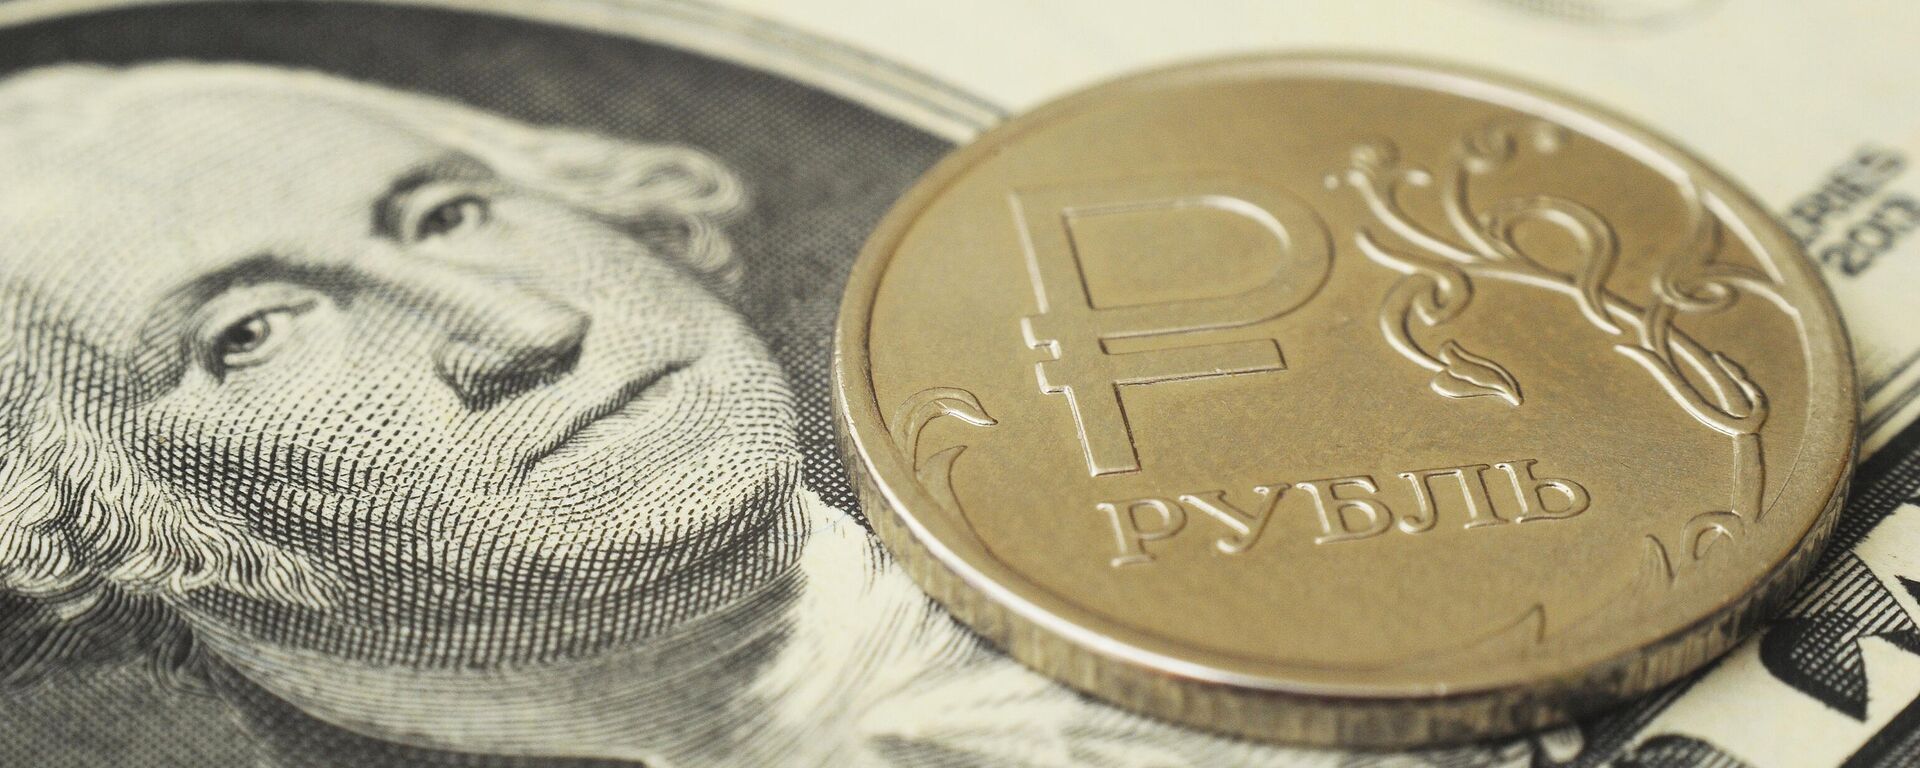 Монета номиналом один рубль на банкноте один доллар США. - Sputnik Абхазия, 1920, 04.09.2022